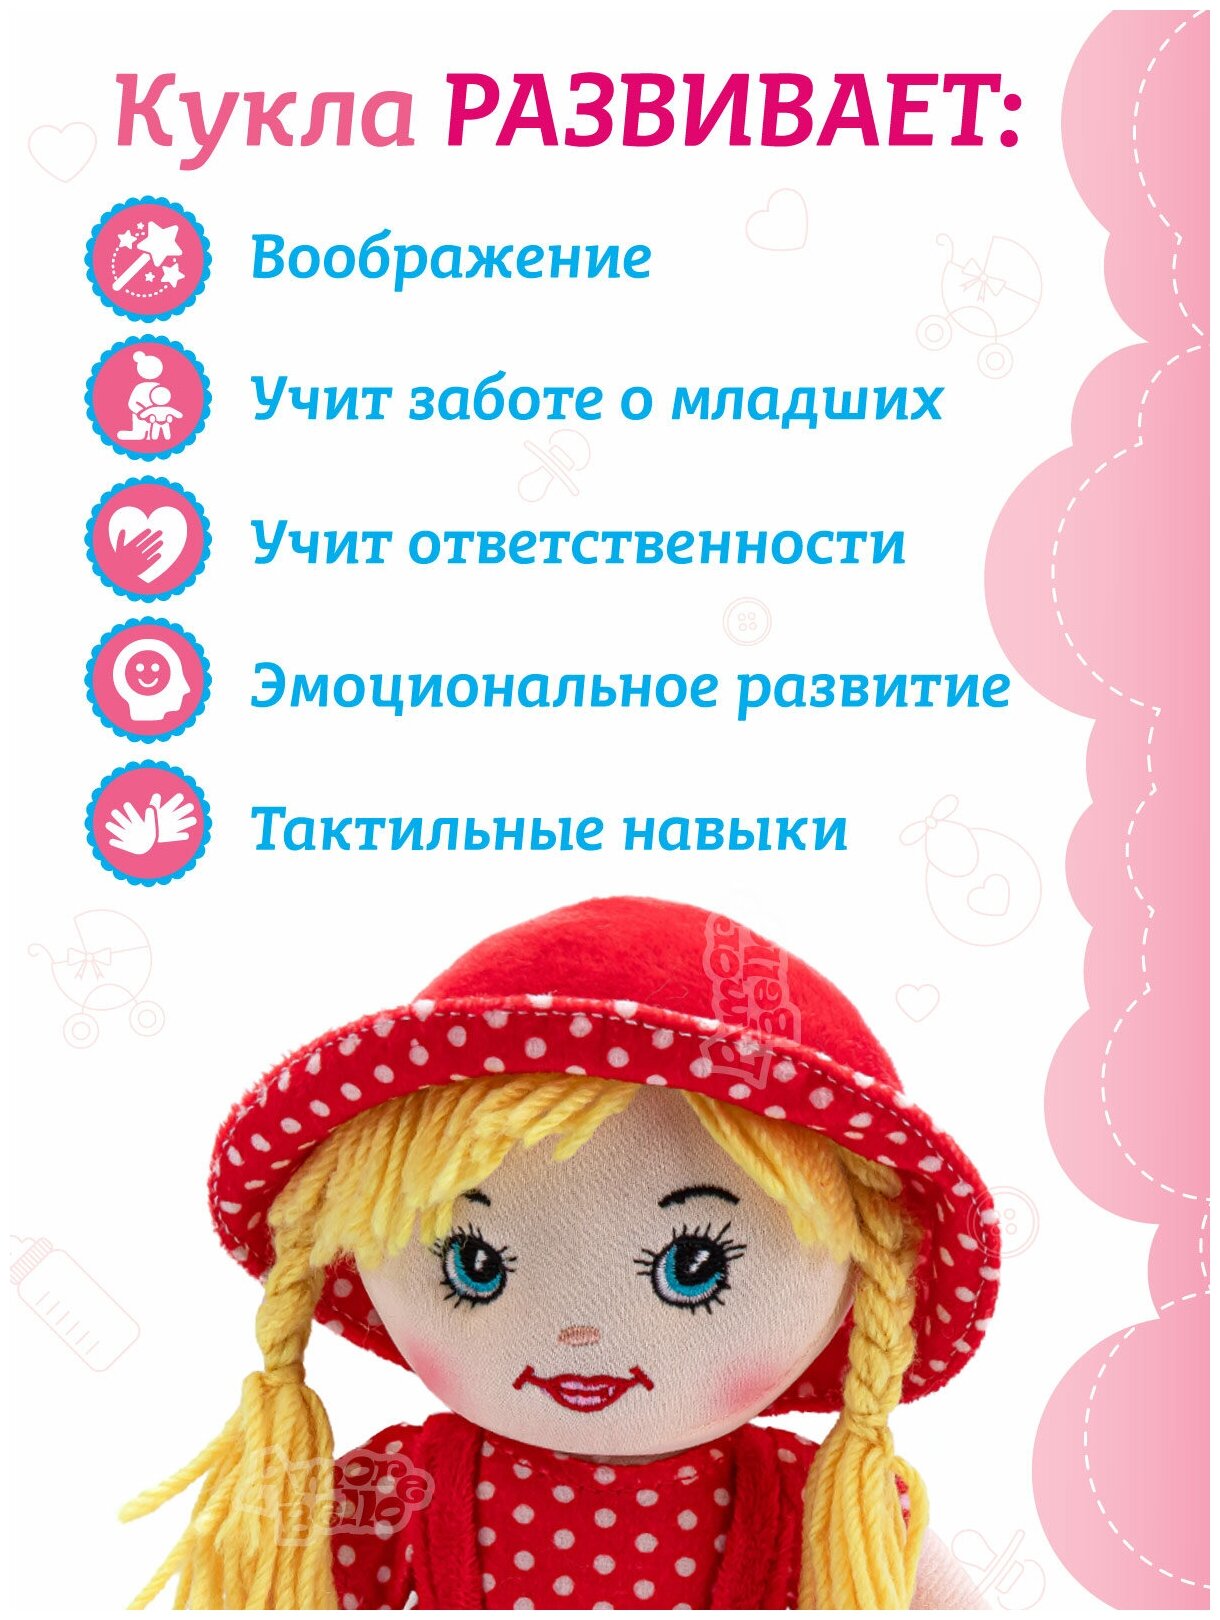 Кукла детская мягконабивная говорящая ТМ Amore Bello, 26 см, на батарейках, фразы на русском языке/стихотворение/песенка, JB0572064